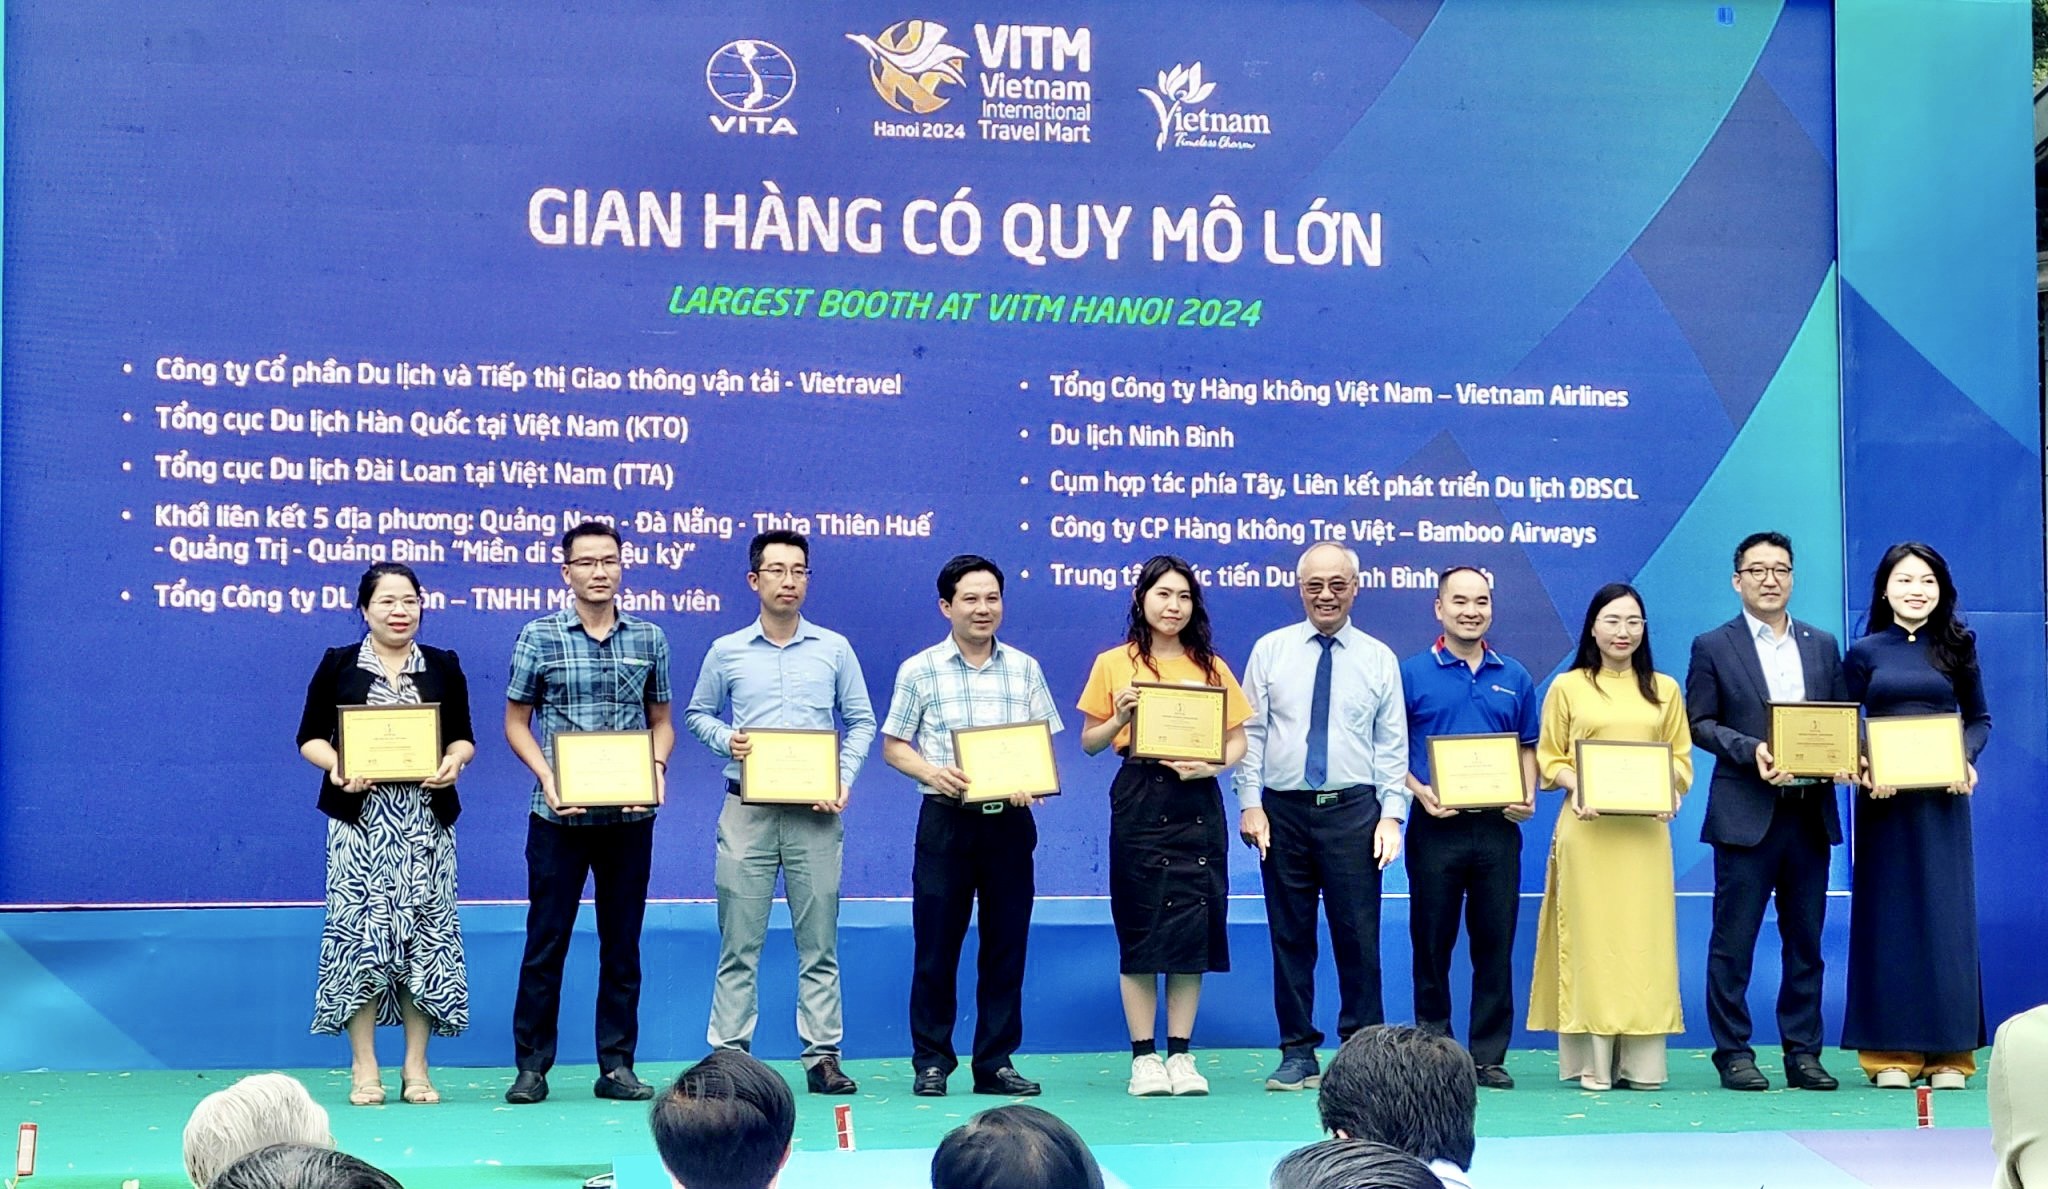 Doanh thu bán sản phẩm du lịch trong 4 ngày Hội chợ VITM Hà Nội 2024 đạt trên 180 tỷ đồng